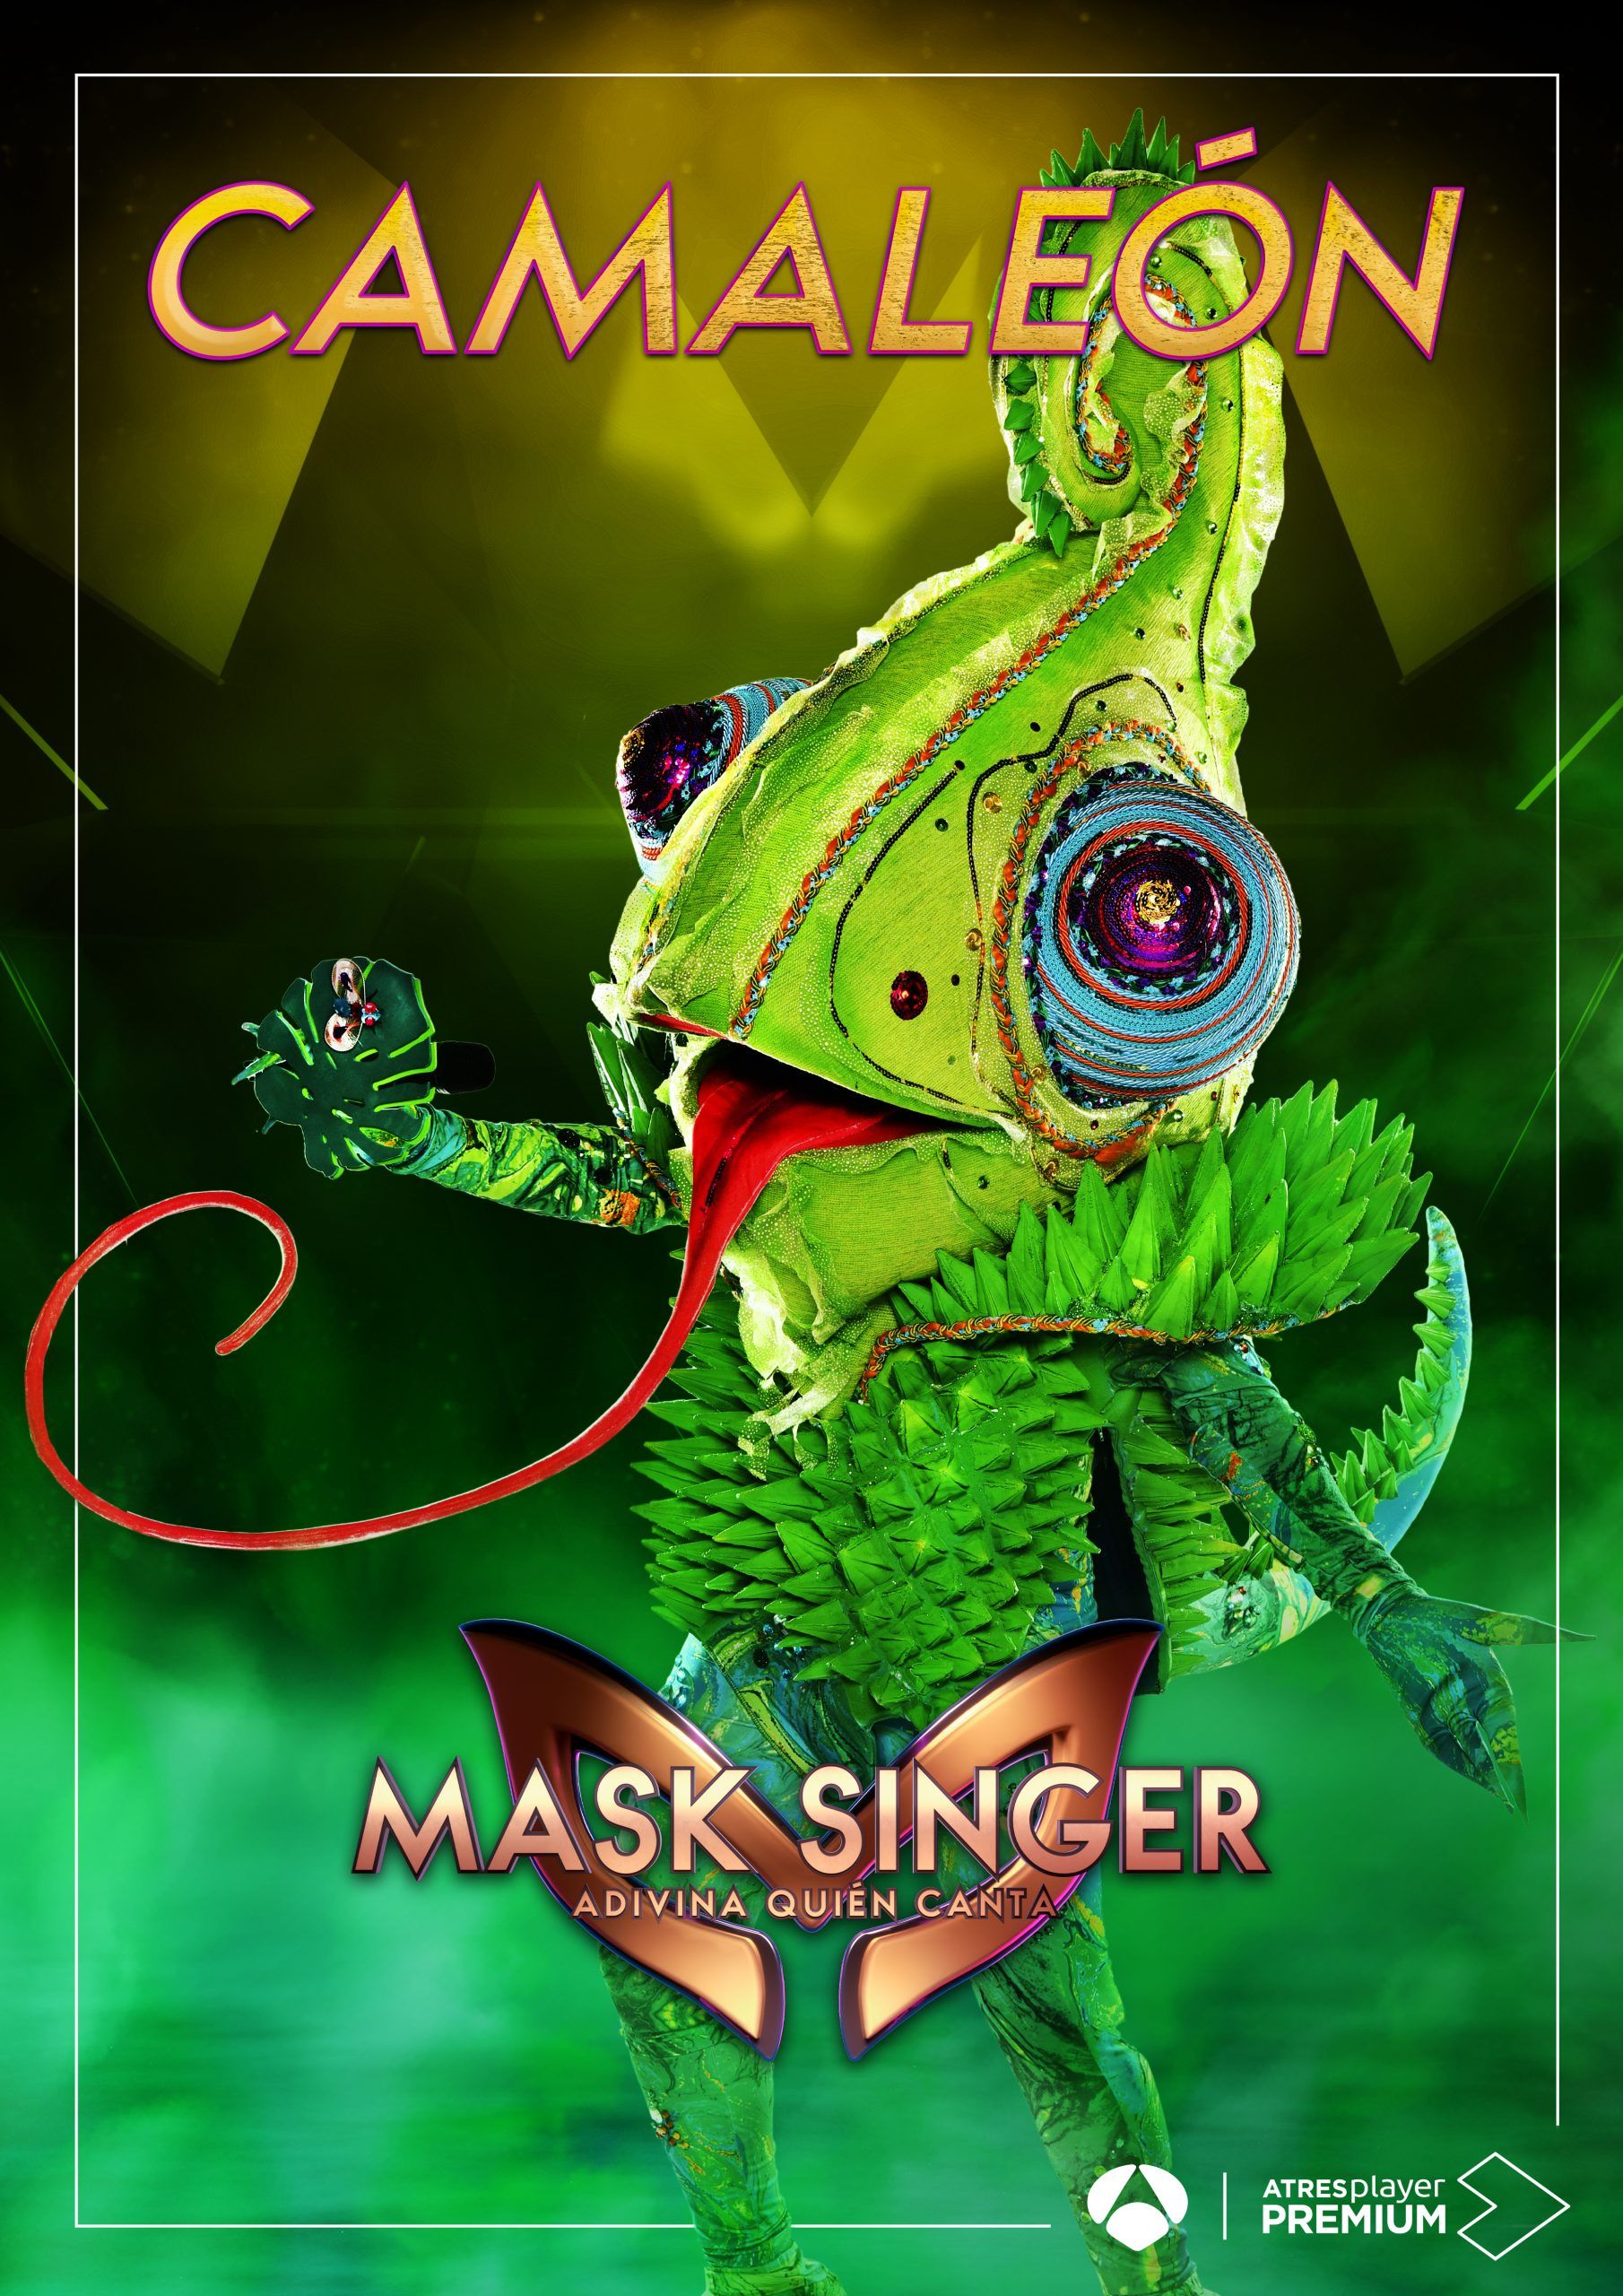 Mask Singer – Camaleon